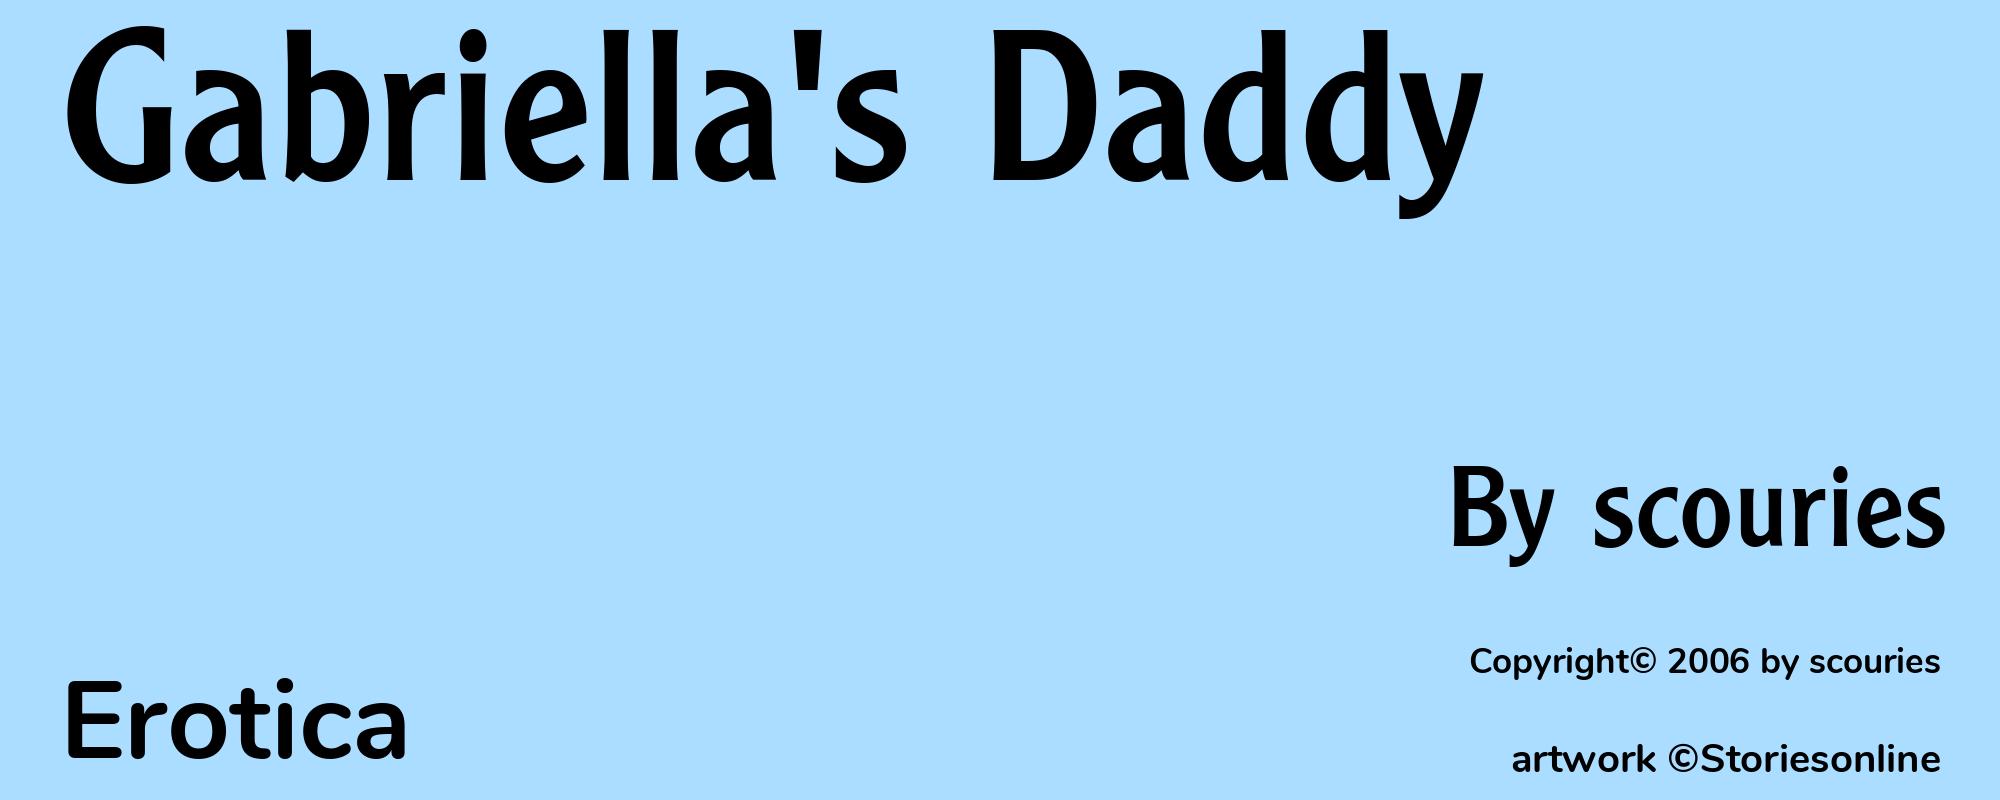 Gabriella's Daddy - Cover